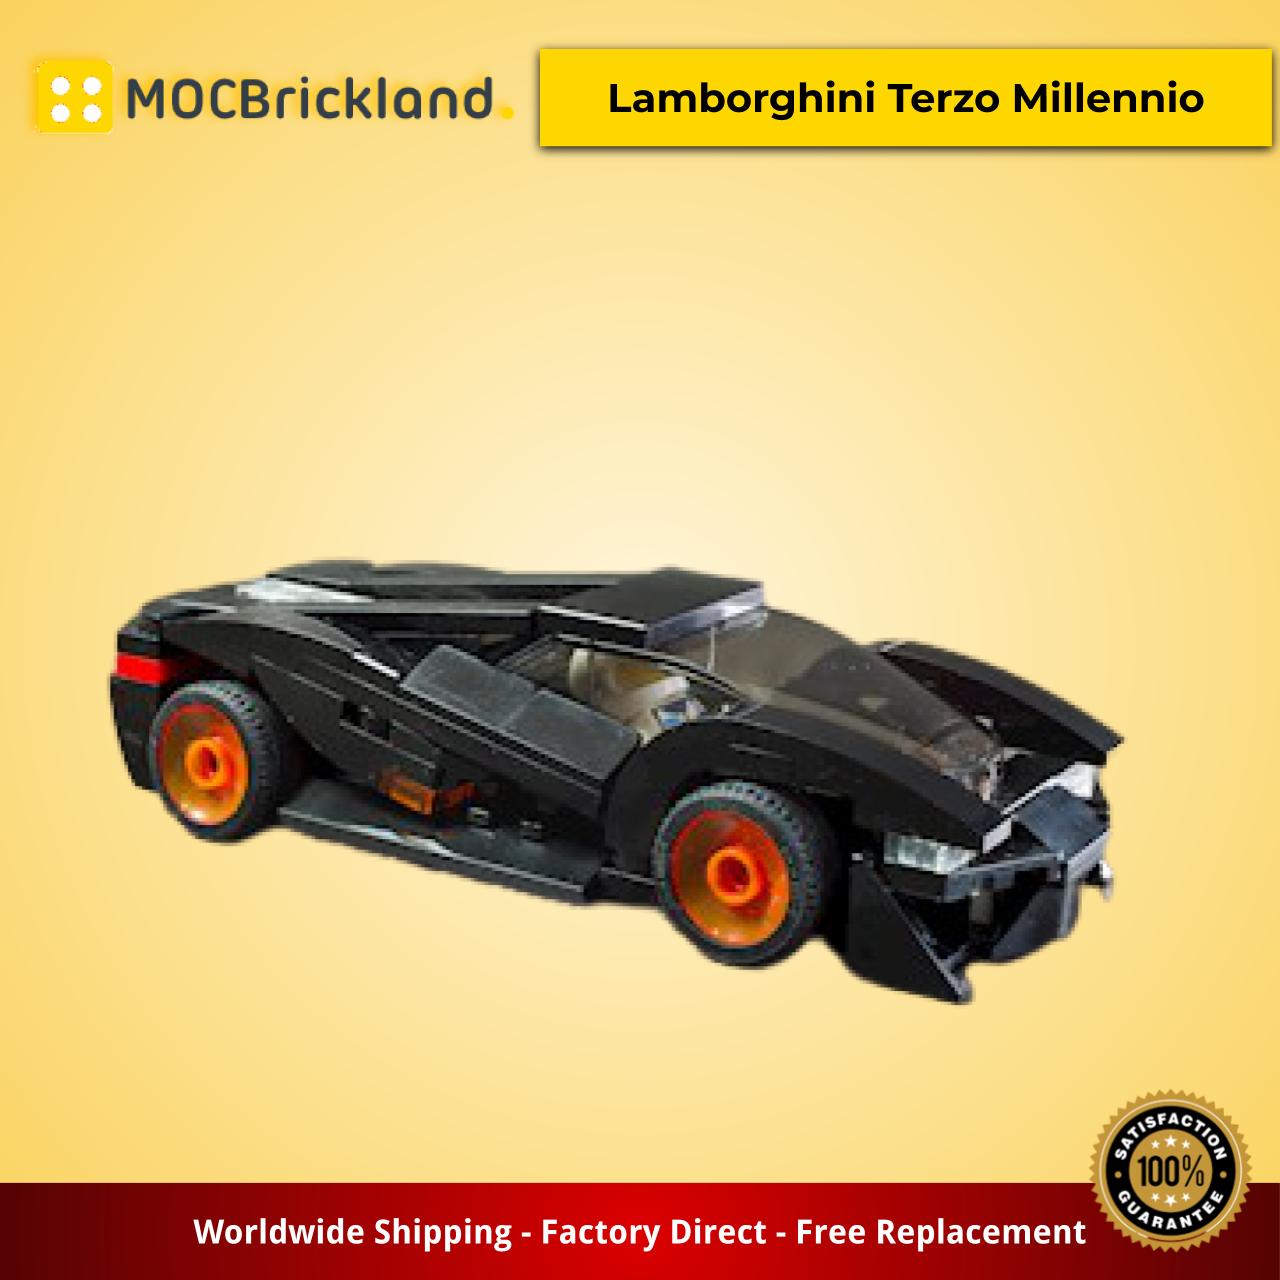 MOCBRICKLAND MOC-20099 Lamborghini Terzo Millennio